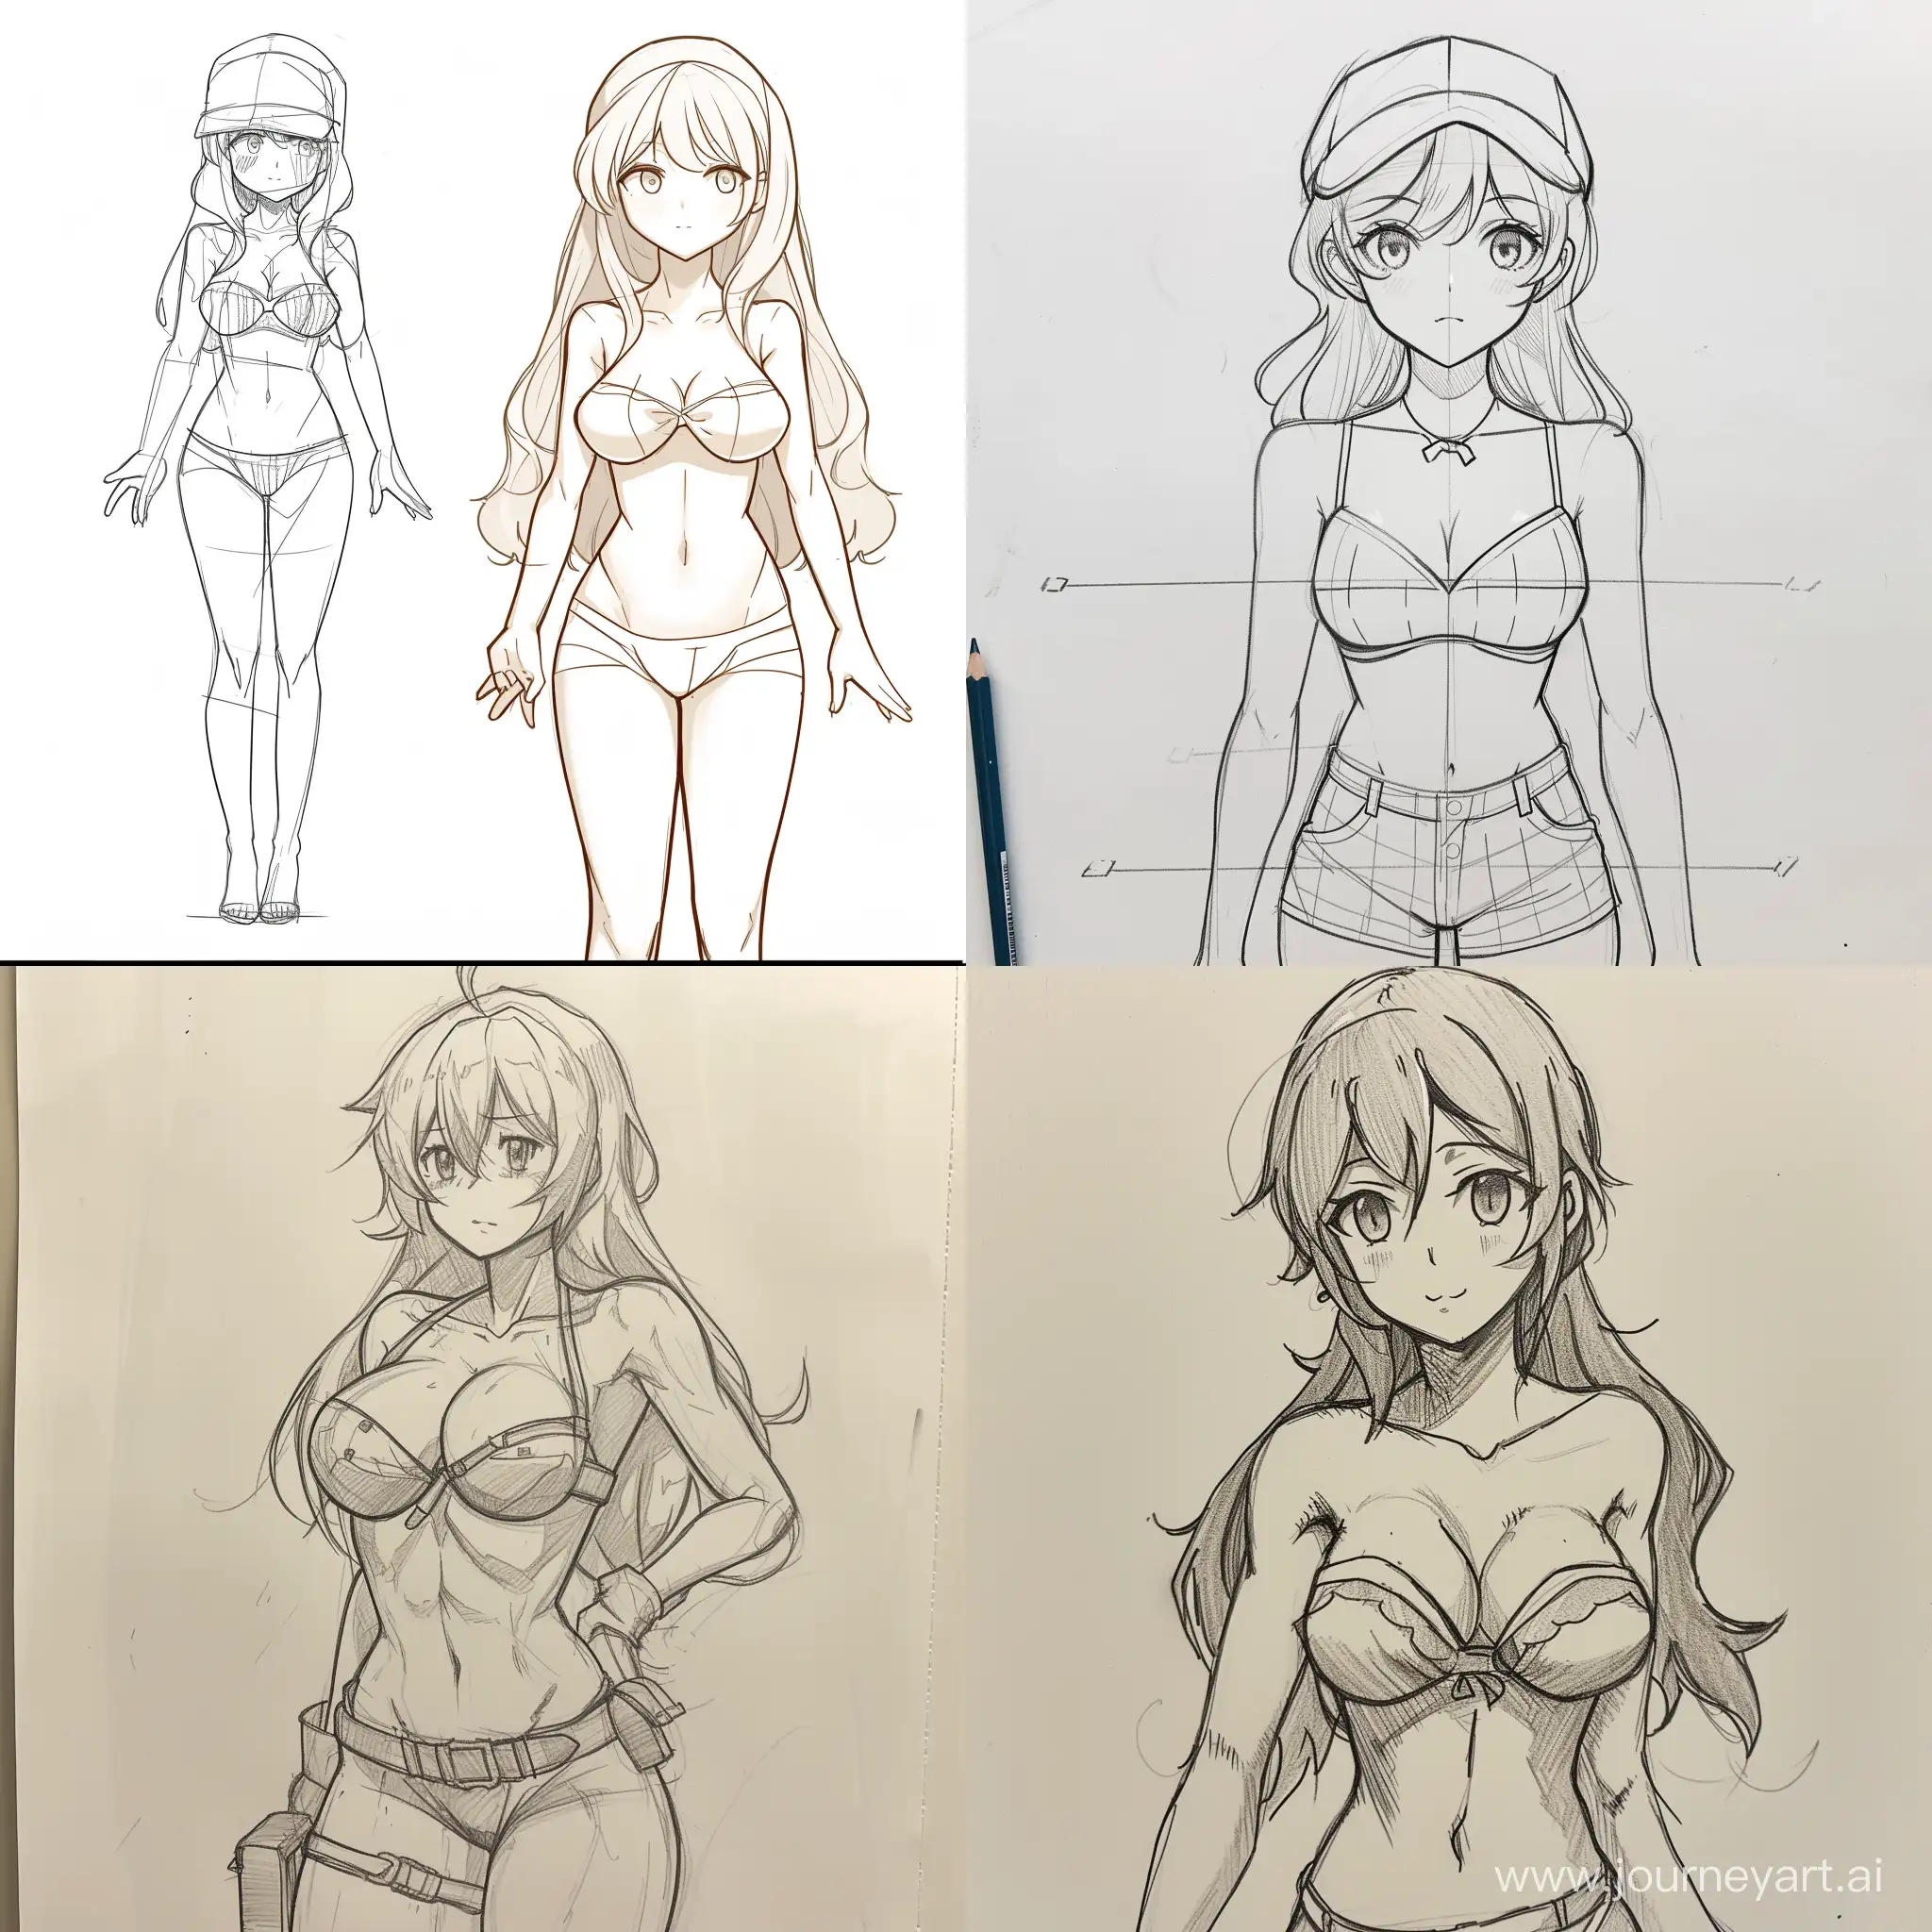 Инструкция рисования женского аниме персонажа, никаких лишних атрибутов и предметов, акцент на правильной анатомии и телосложении